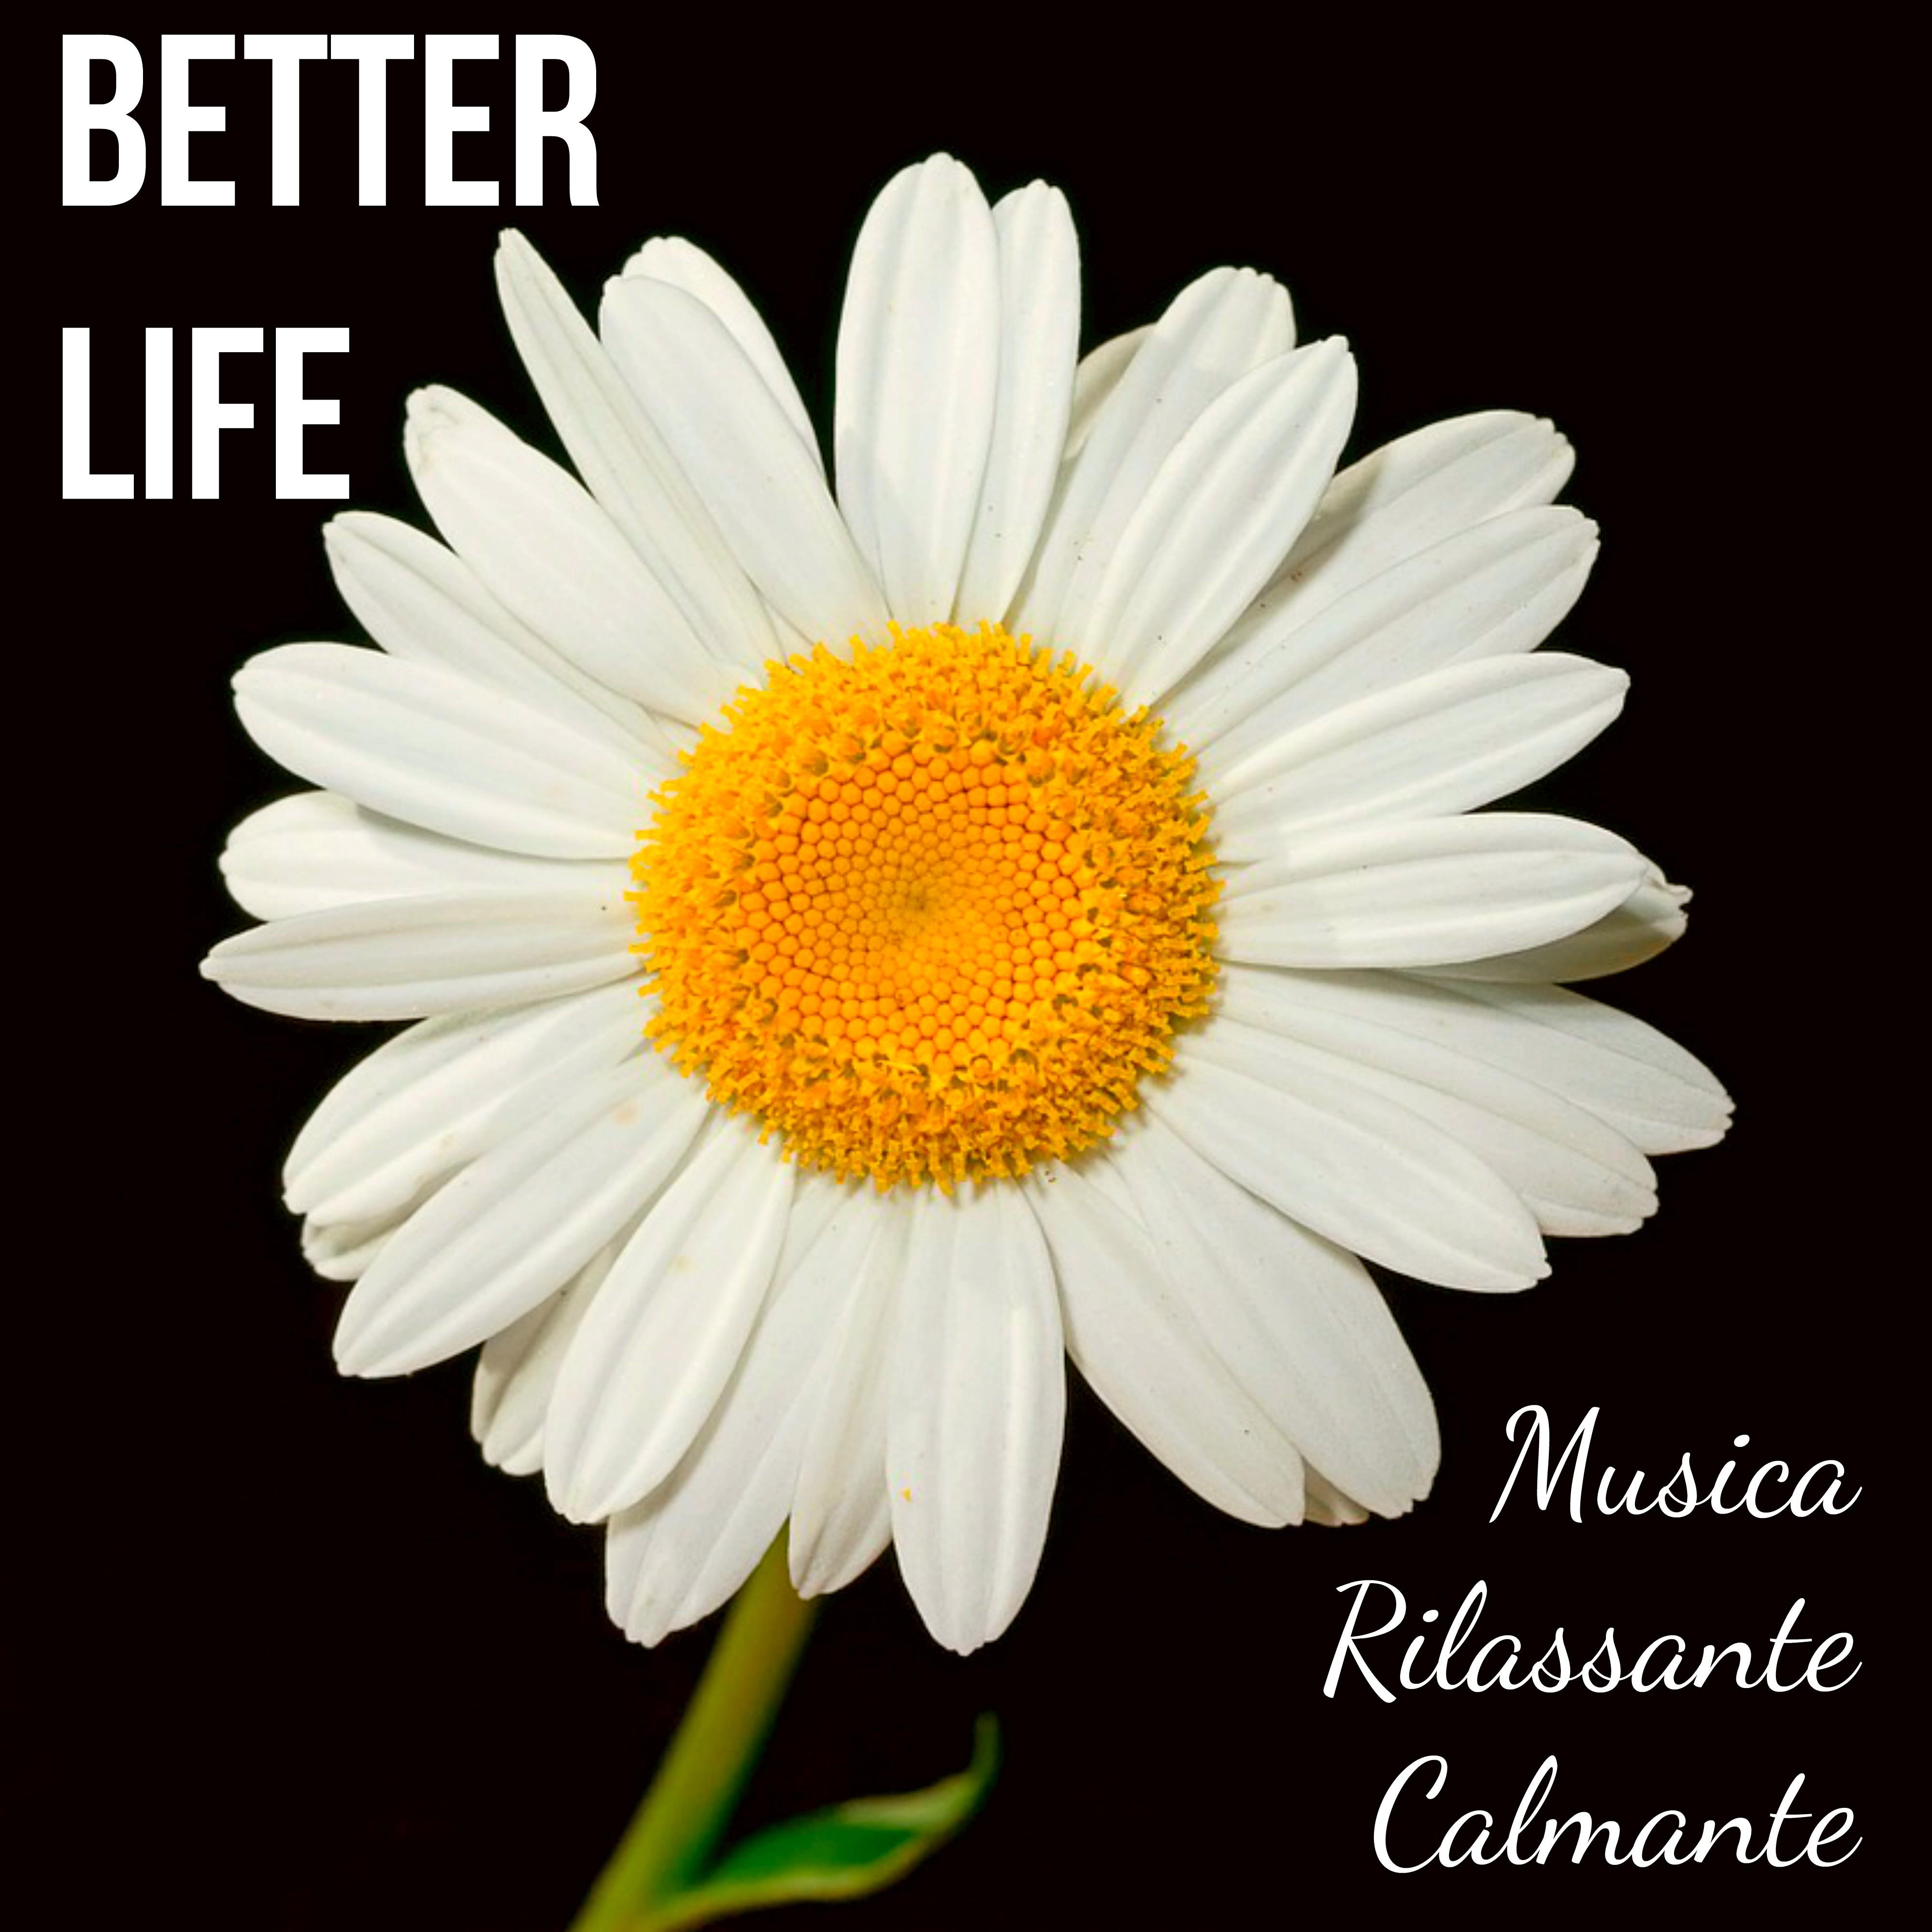 Better Life - Musica Rilassante Calmante per Rinascita Sonno Profondo Centro Benessere con Suoni Meditativi Spirituali New Age